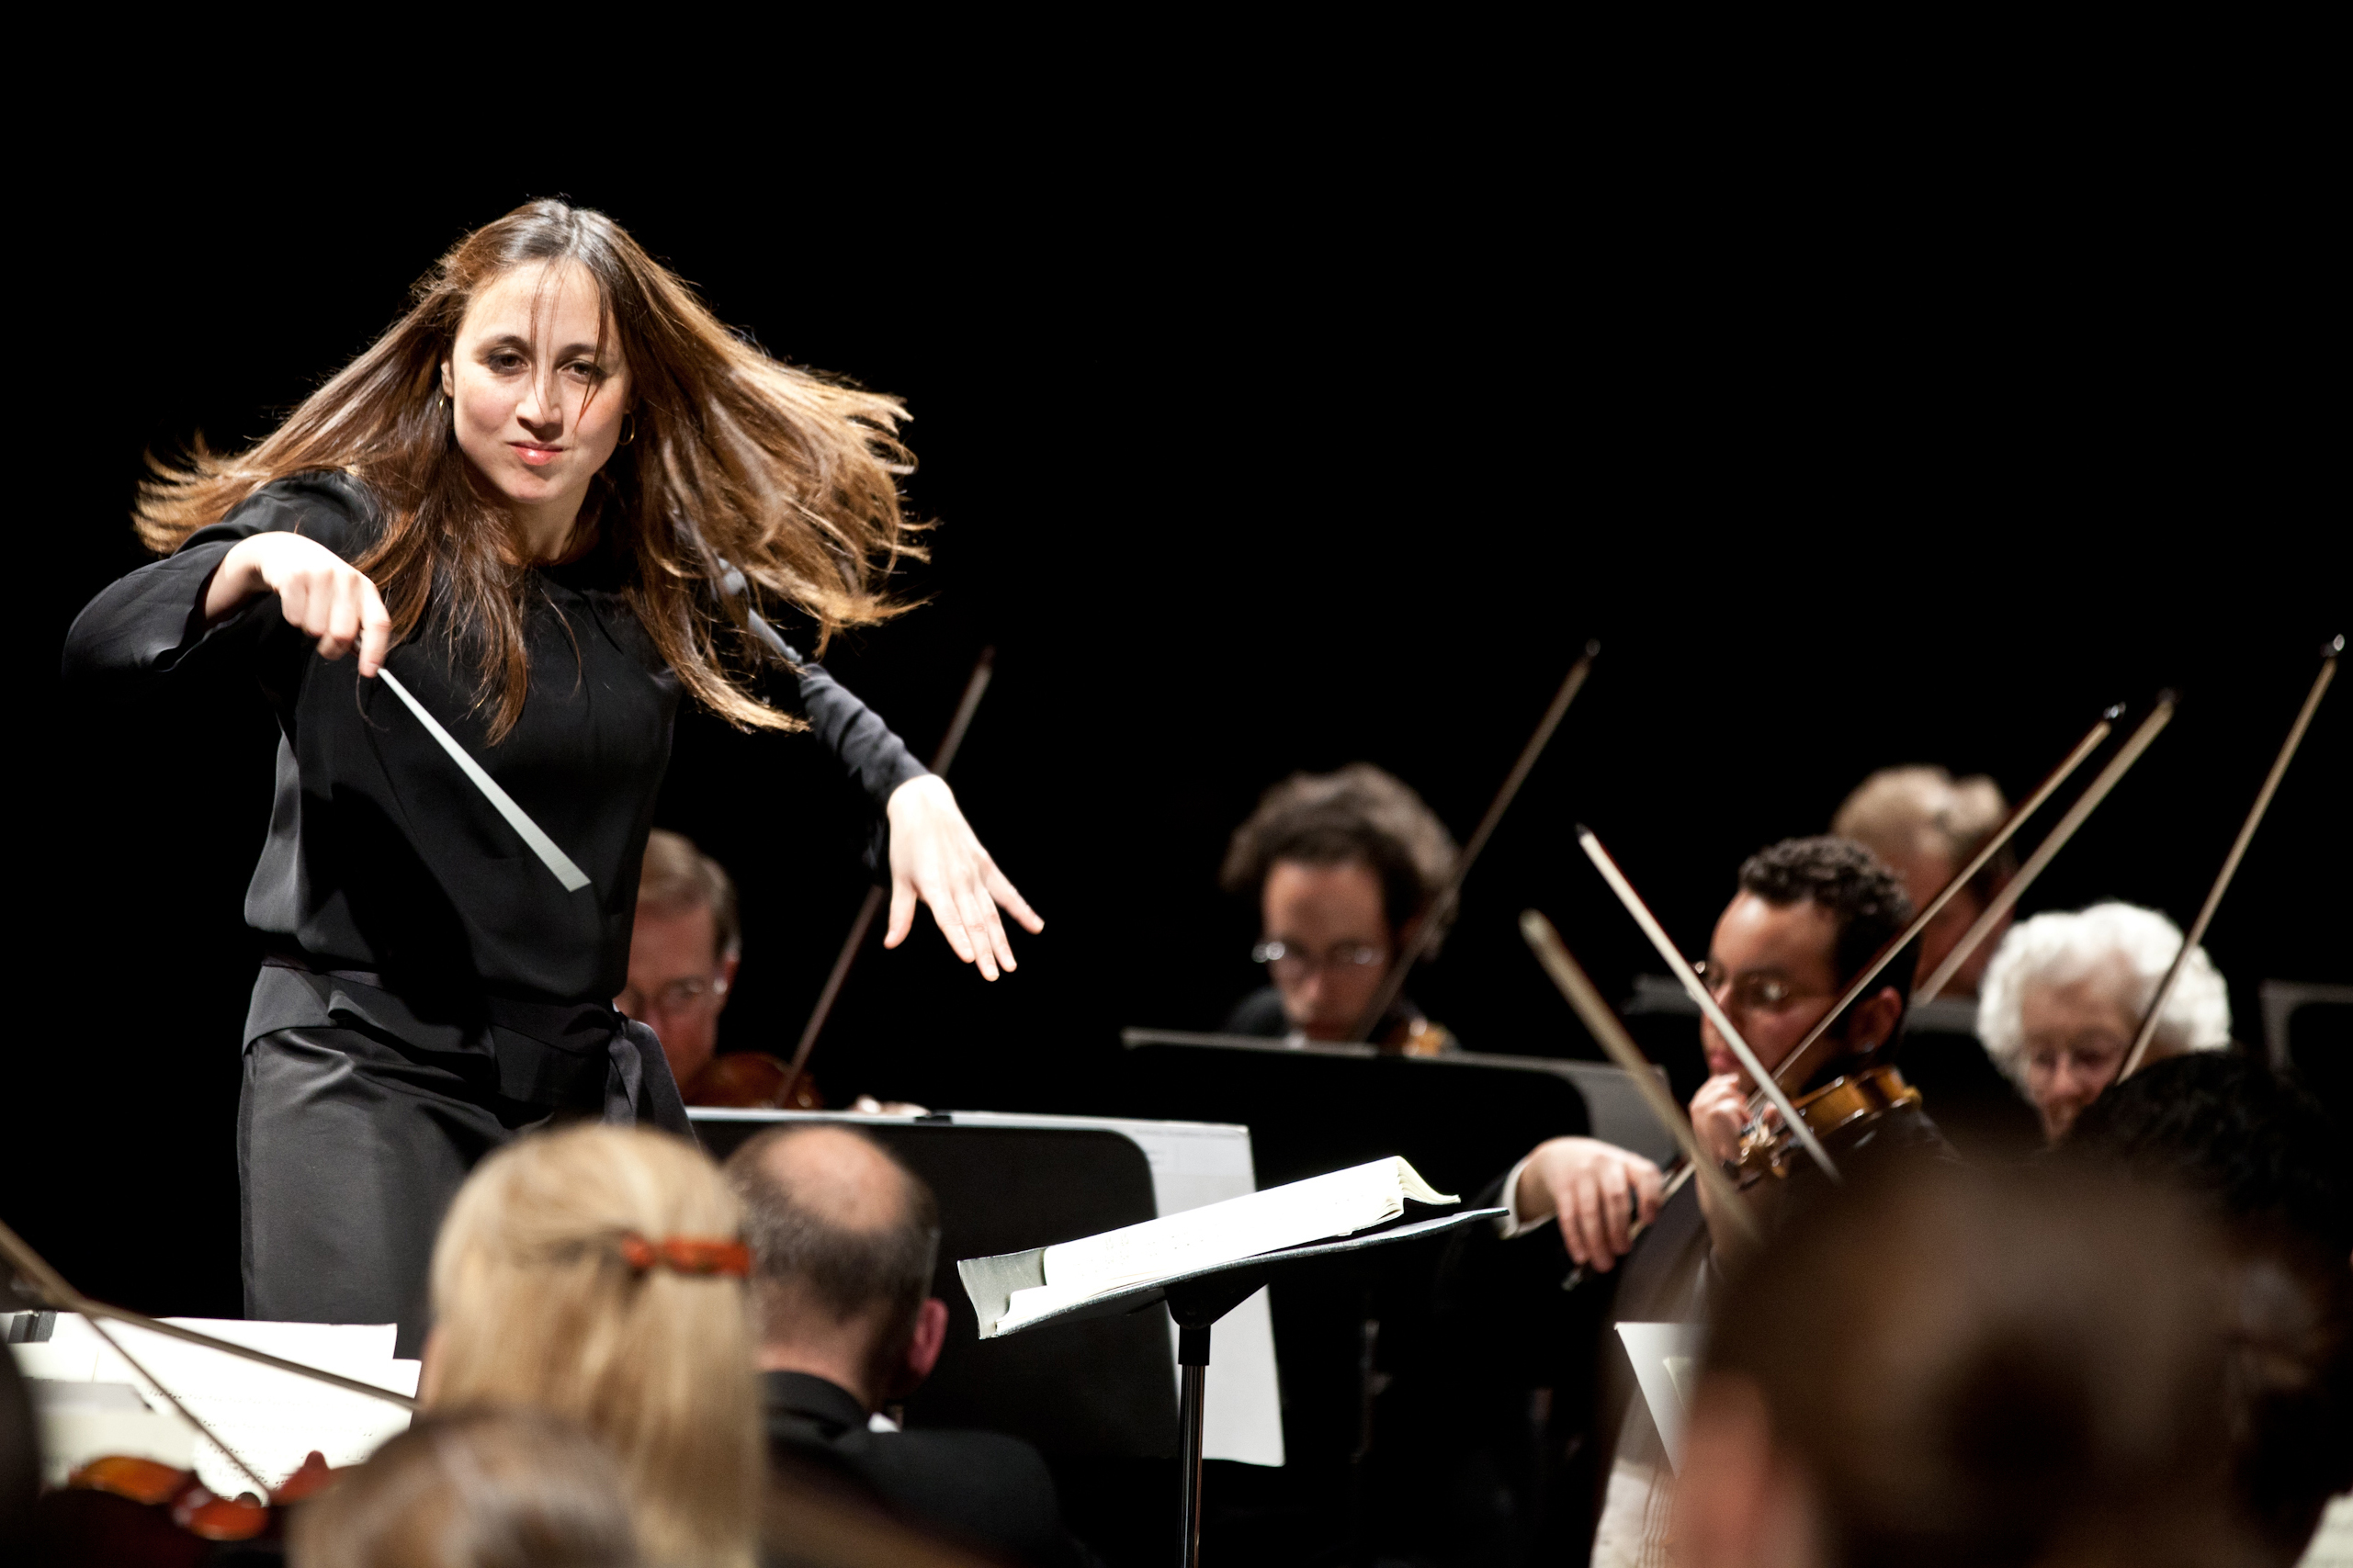 Joana Carneiro conducting